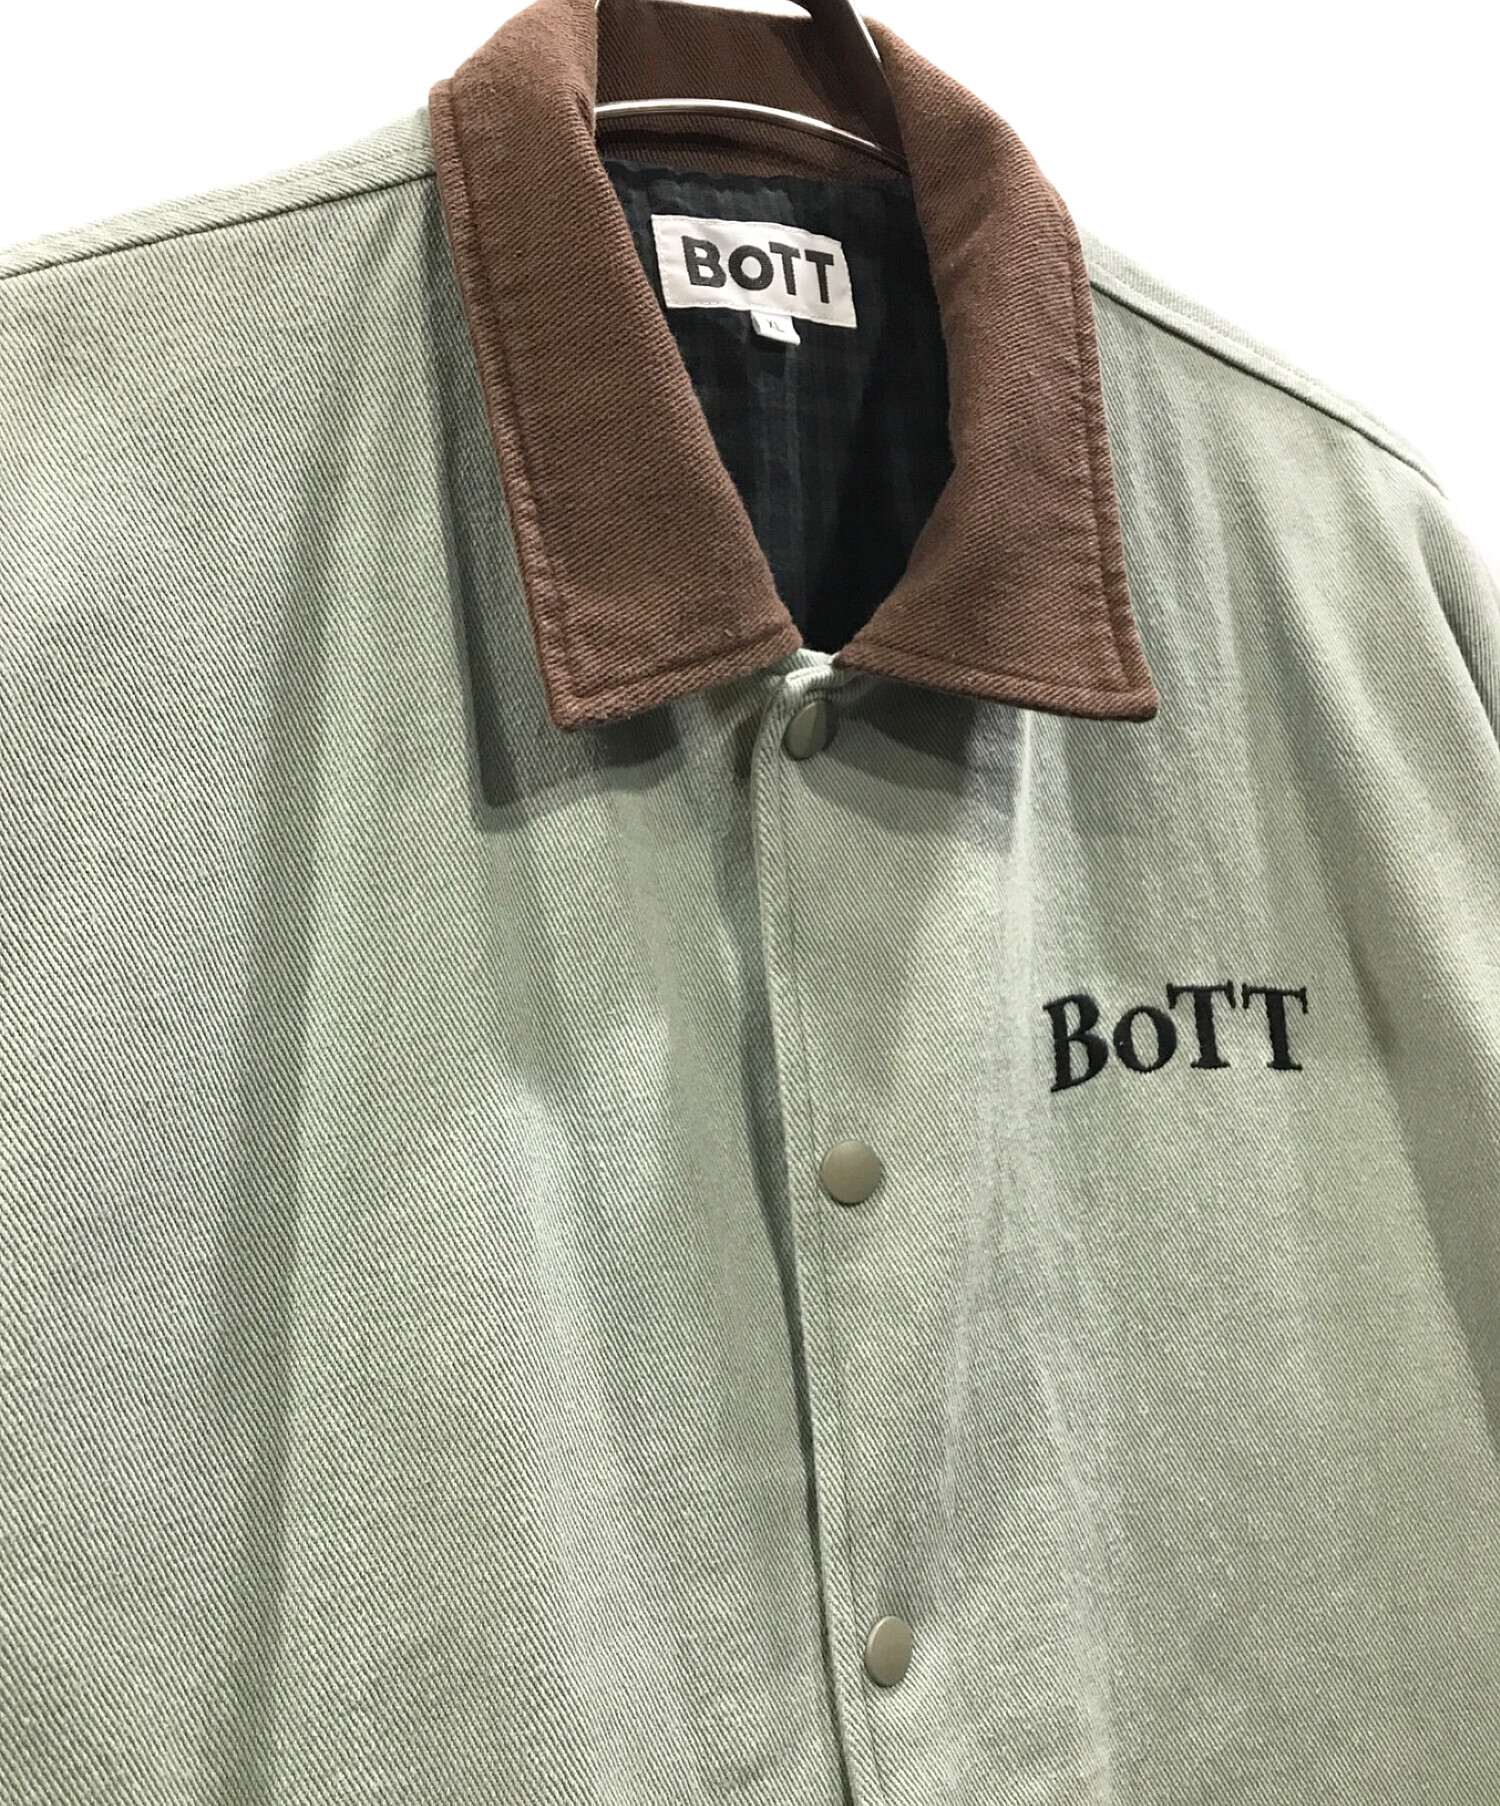 BoTT (ボット) Heavy Twill Coach Jacket コーチジャケット ブラウン×グリーン サイズ:XL